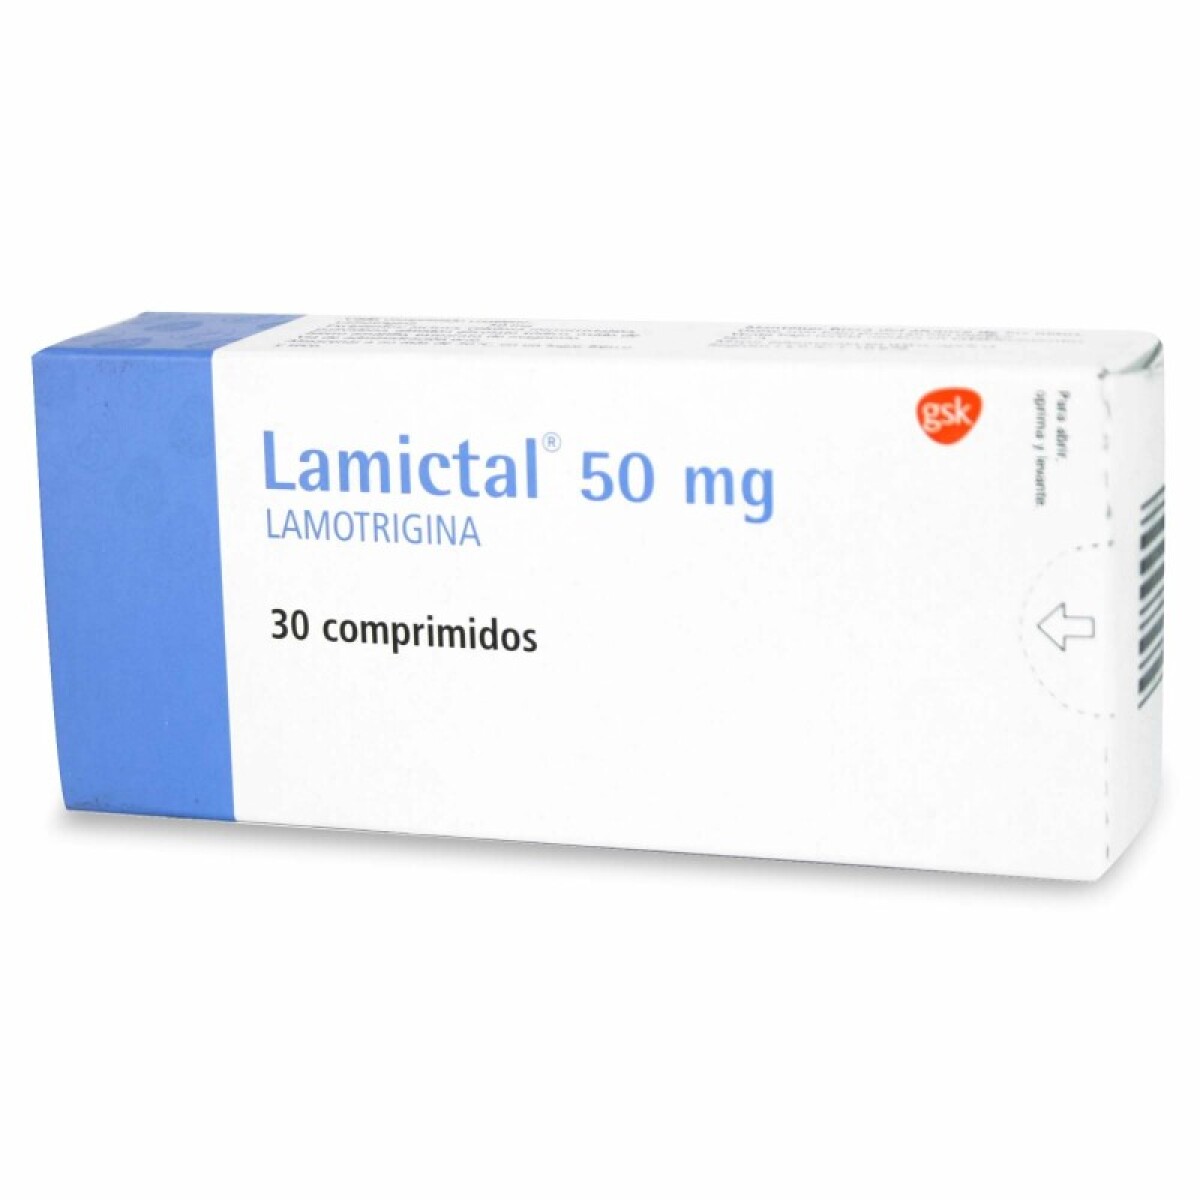 Lamictal 50 mg 30 comprimidos. 